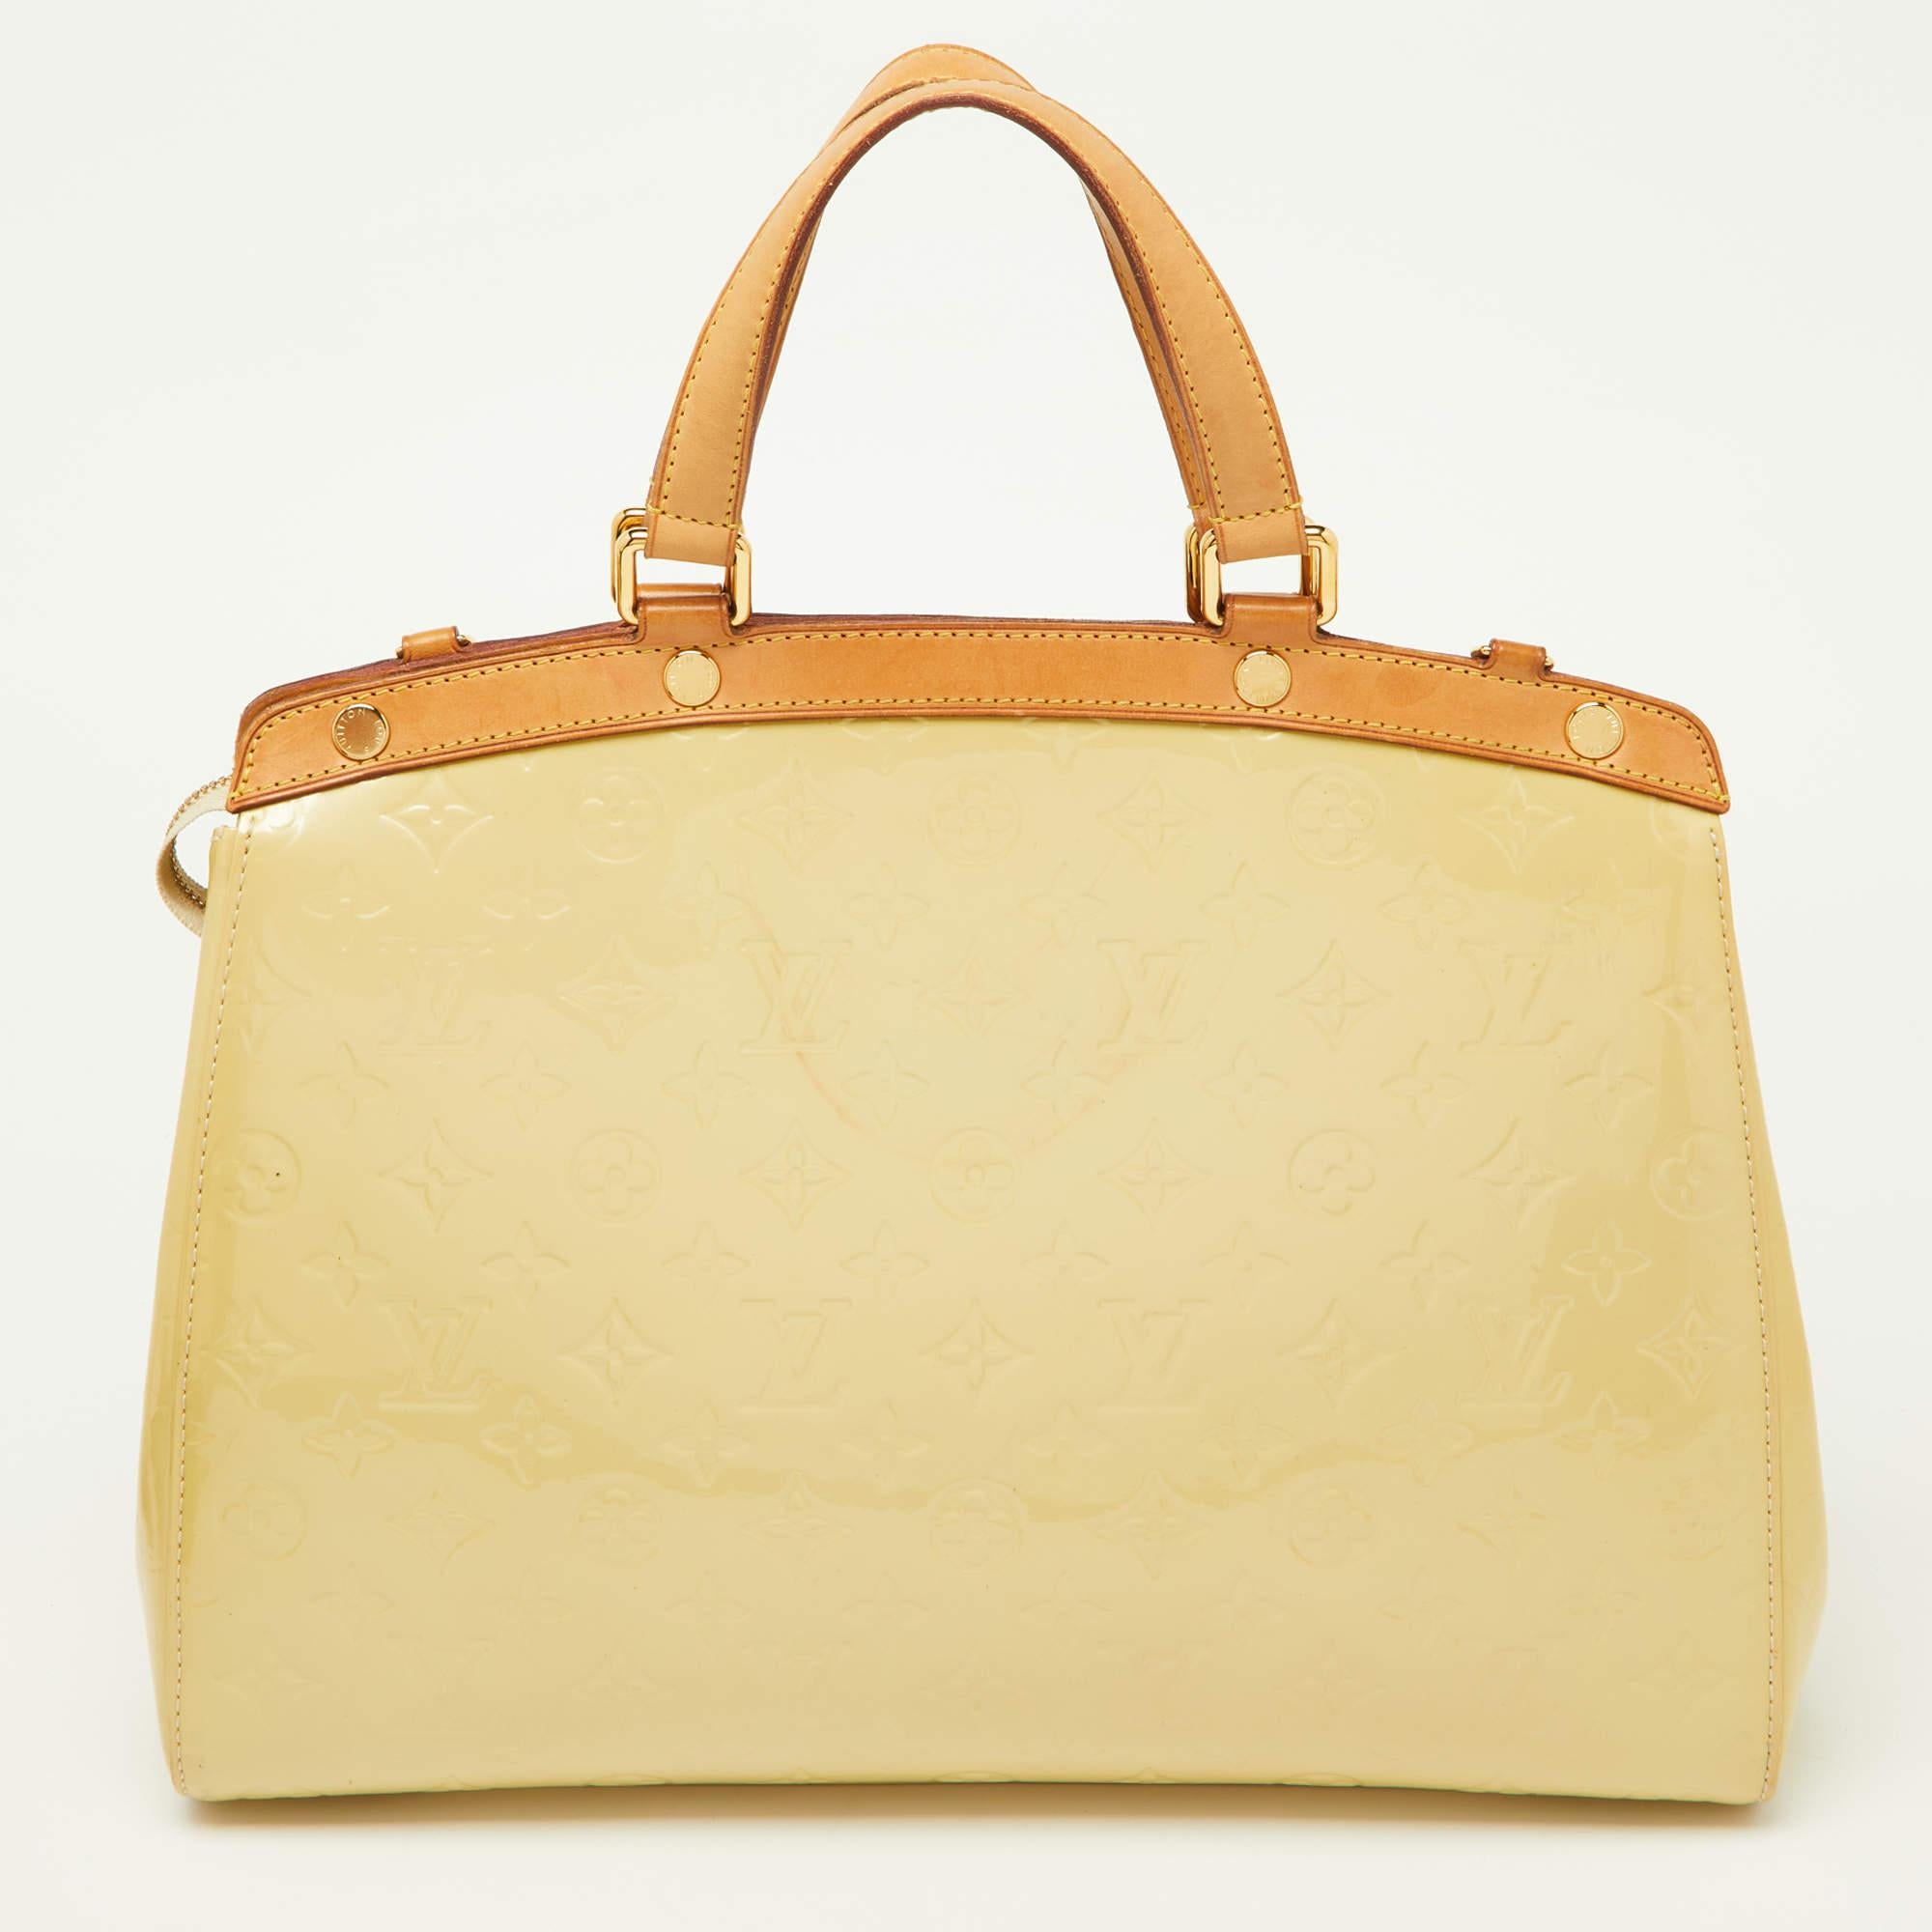 Ce sac Brea GM de la maison Louis Vuitton vous séduira par la précision de sa forme, de son style et de son design. Il est confectionné en Silhouette Monogram Vernis et présente une silhouette structurée et soignée. Il est doté d'accessoires dorés,